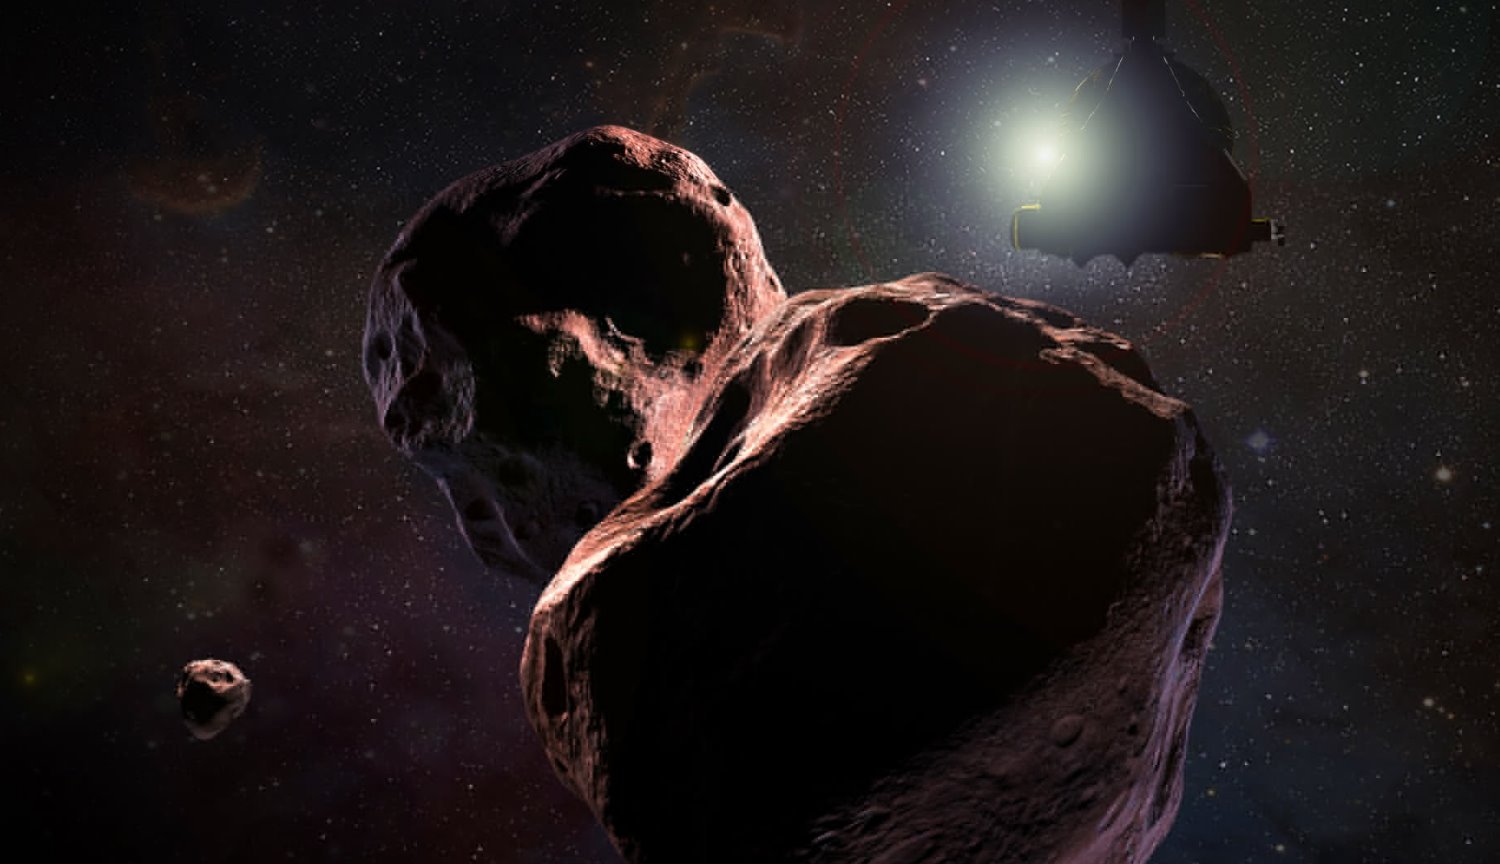 Нова загадка для вчених: чому астероїд Ультіма Туле має сплющену форму?